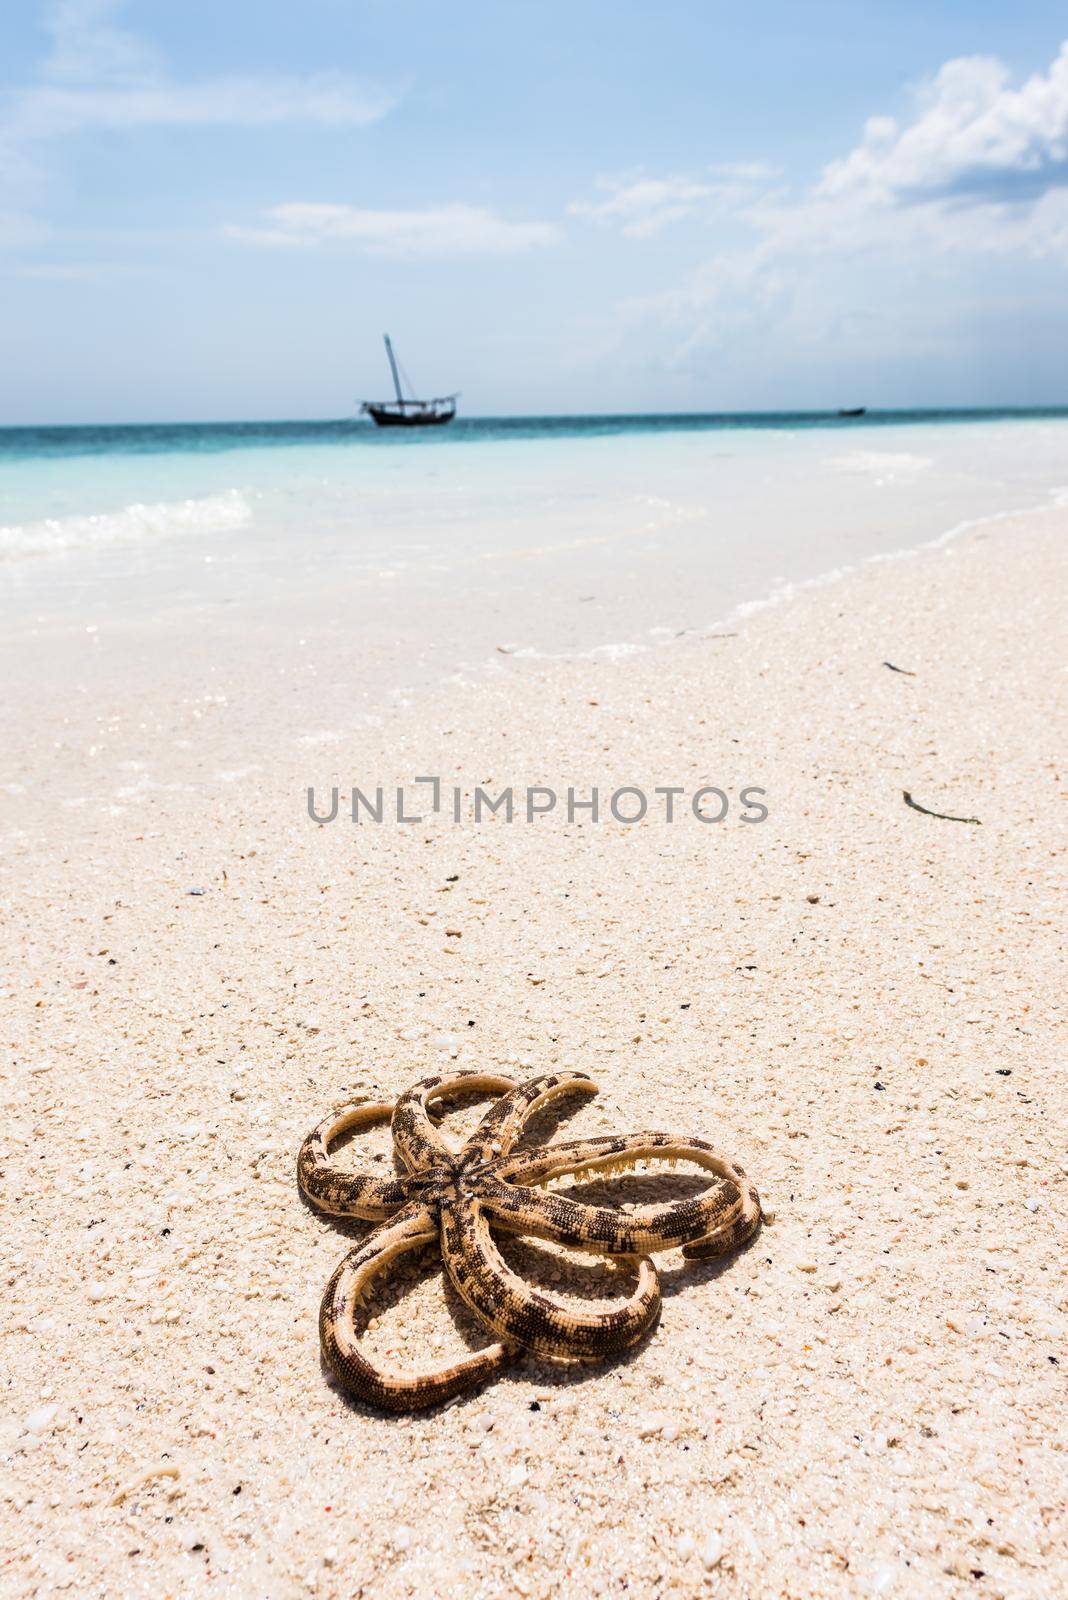 octopus on seashore with ocean on the background by GekaSkr